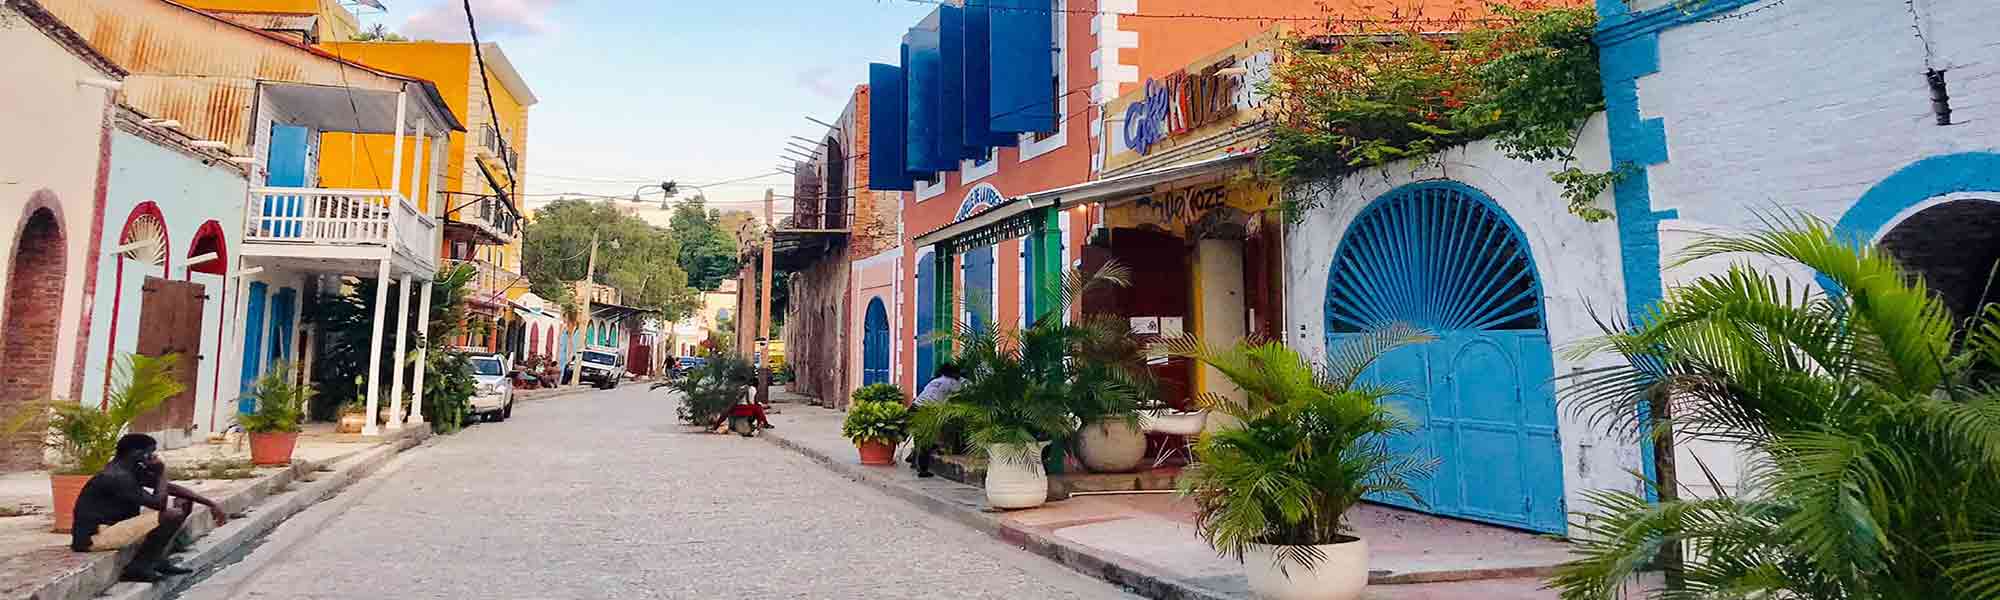 Gate med fargerike hus i byen Jacmel i Haiti